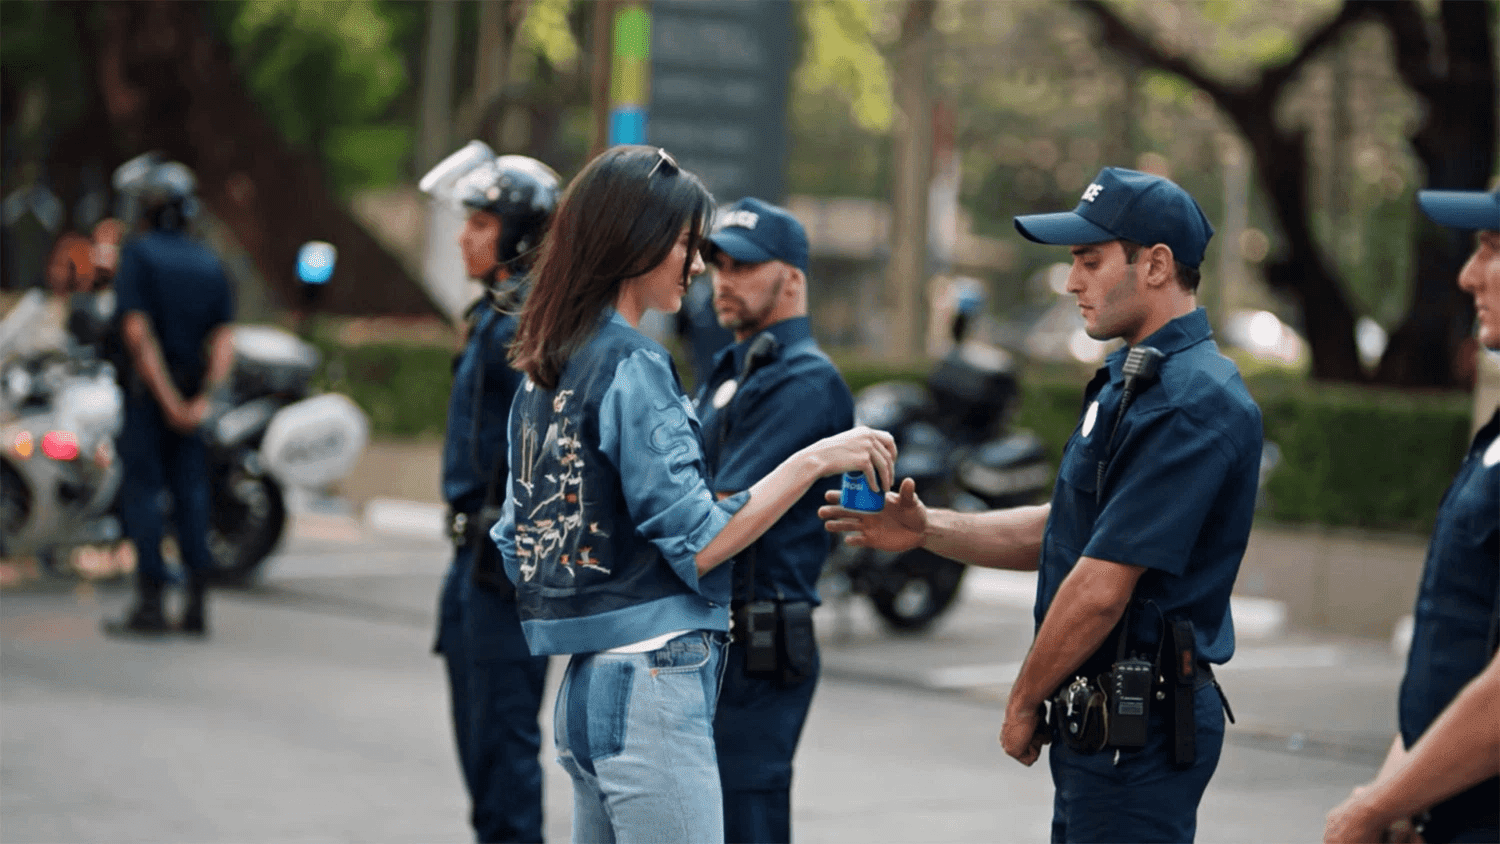 Quảng cáo gây tranh cãi của Pepsi (cre: shanebarker)